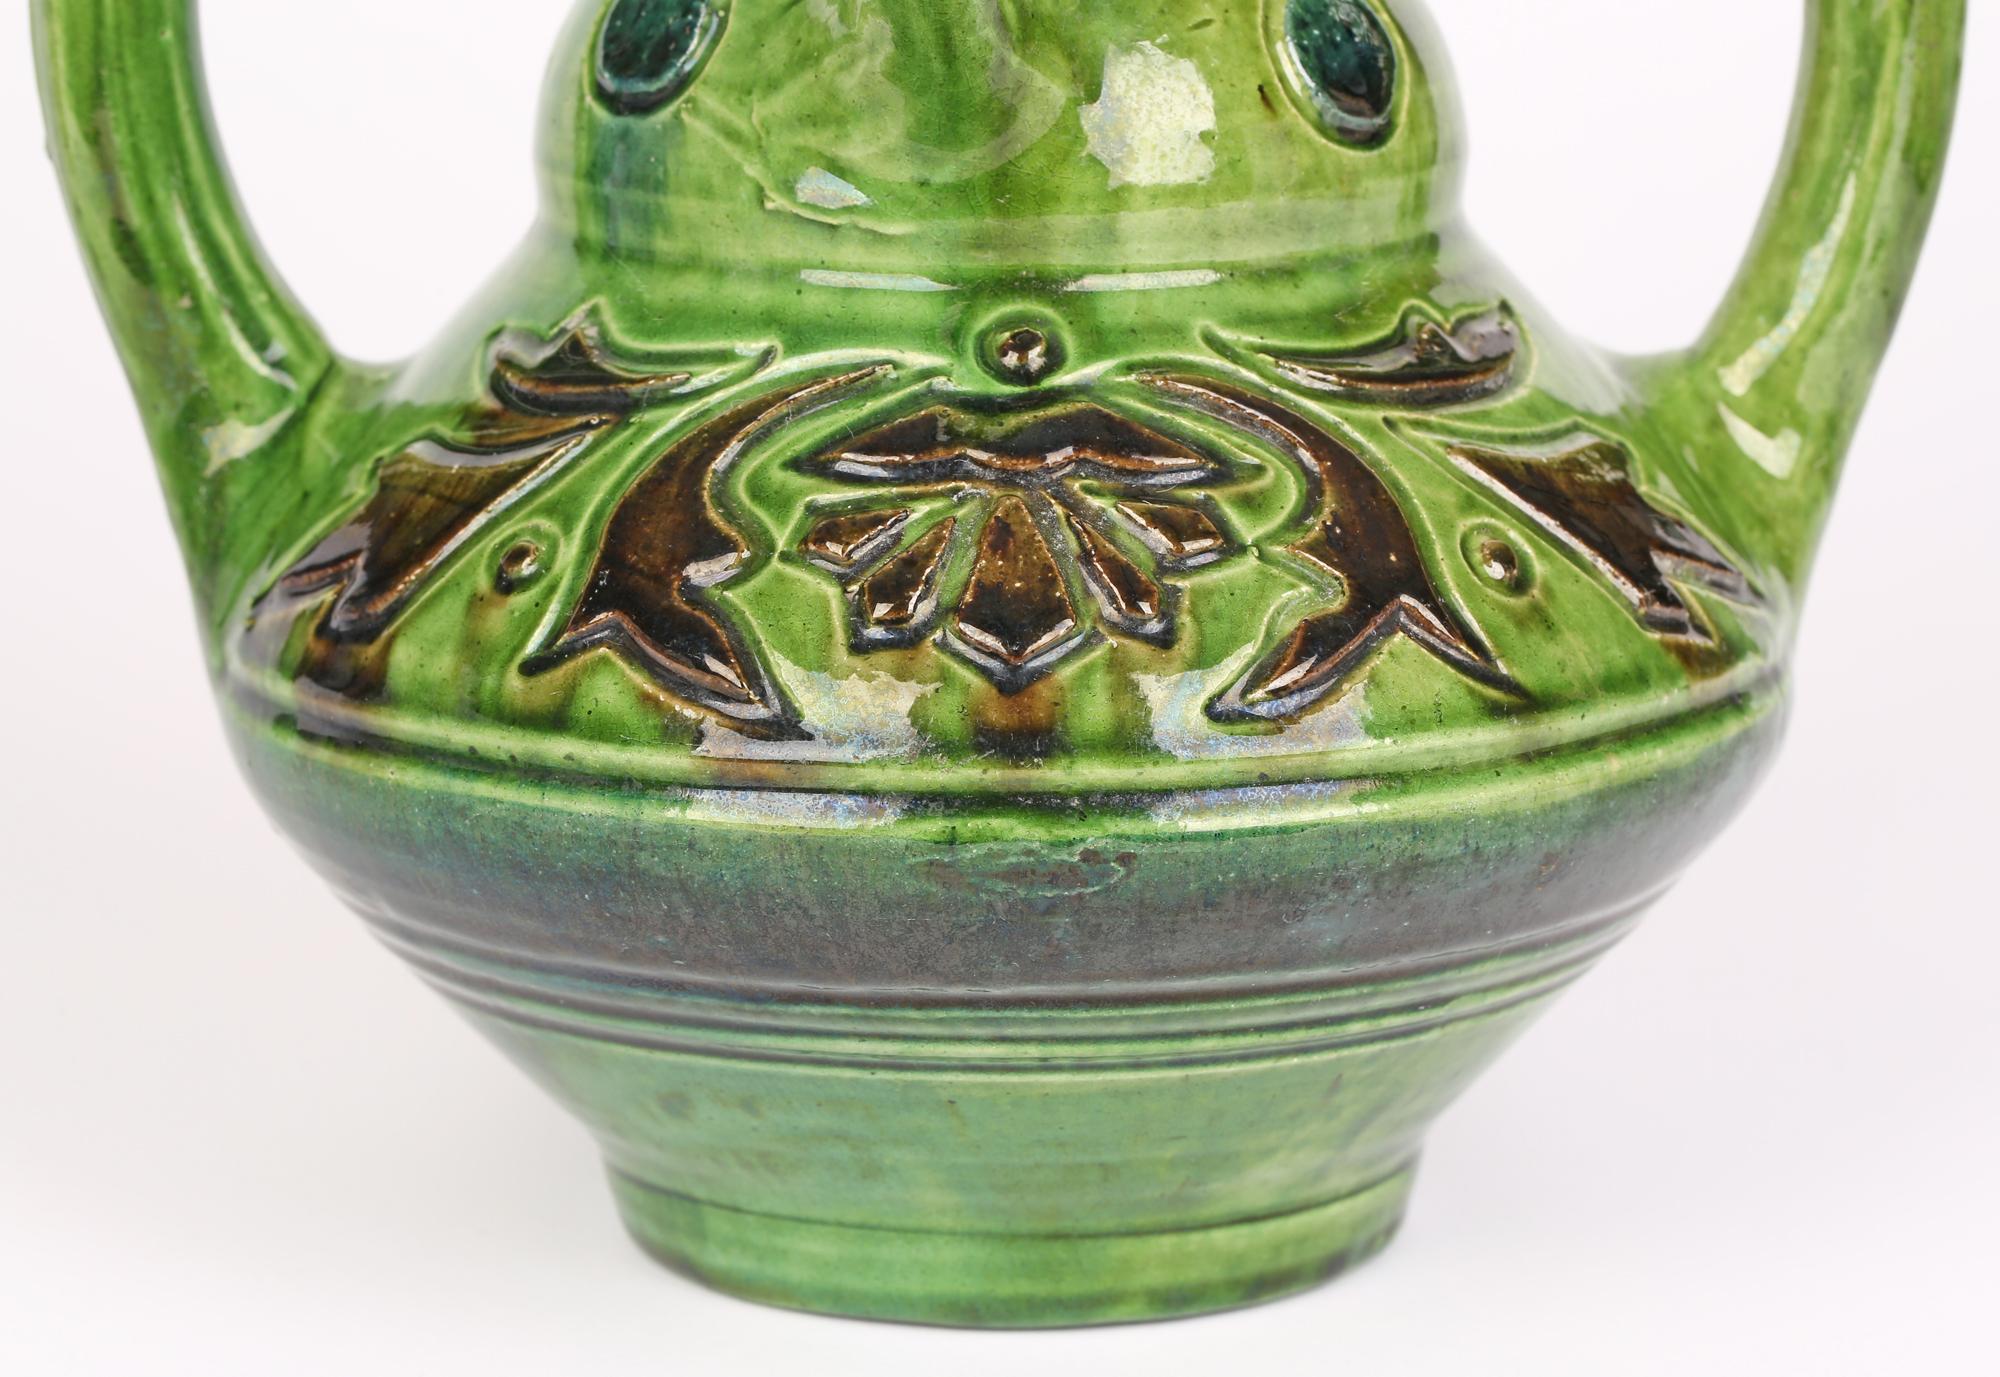 Un très élégant vase en poterie d'art belge Art Nouveau à quatre anses avec des motifs floraux stylisés datant d'environ 1900. Le vase repose sur un pied étroit et rond, avec un corps inférieur large et rond, un haut col profilé, deux grandes